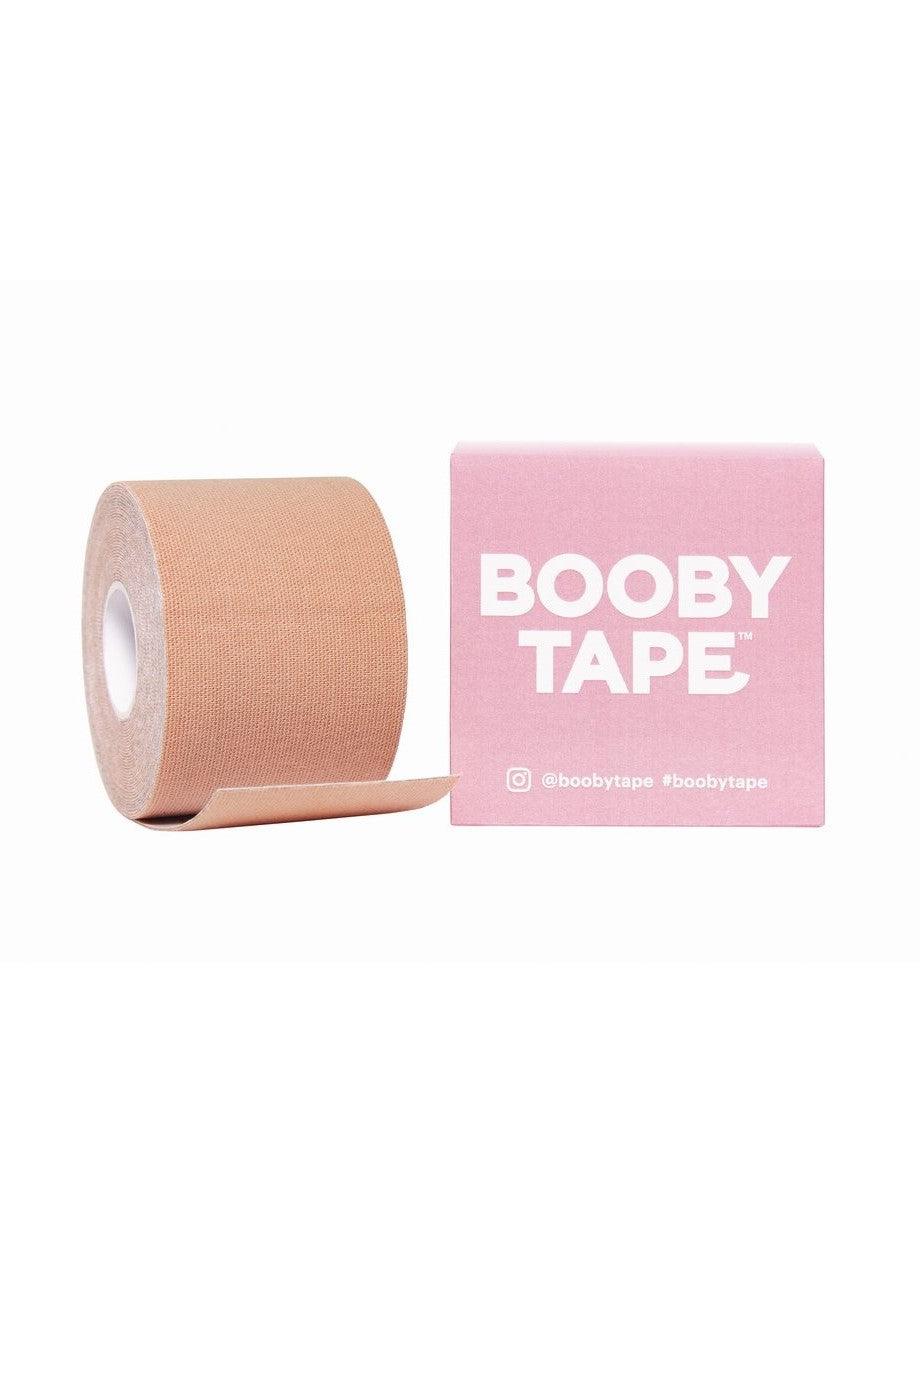 Booby Tape - Nude - SHOPJAUS - JAUS